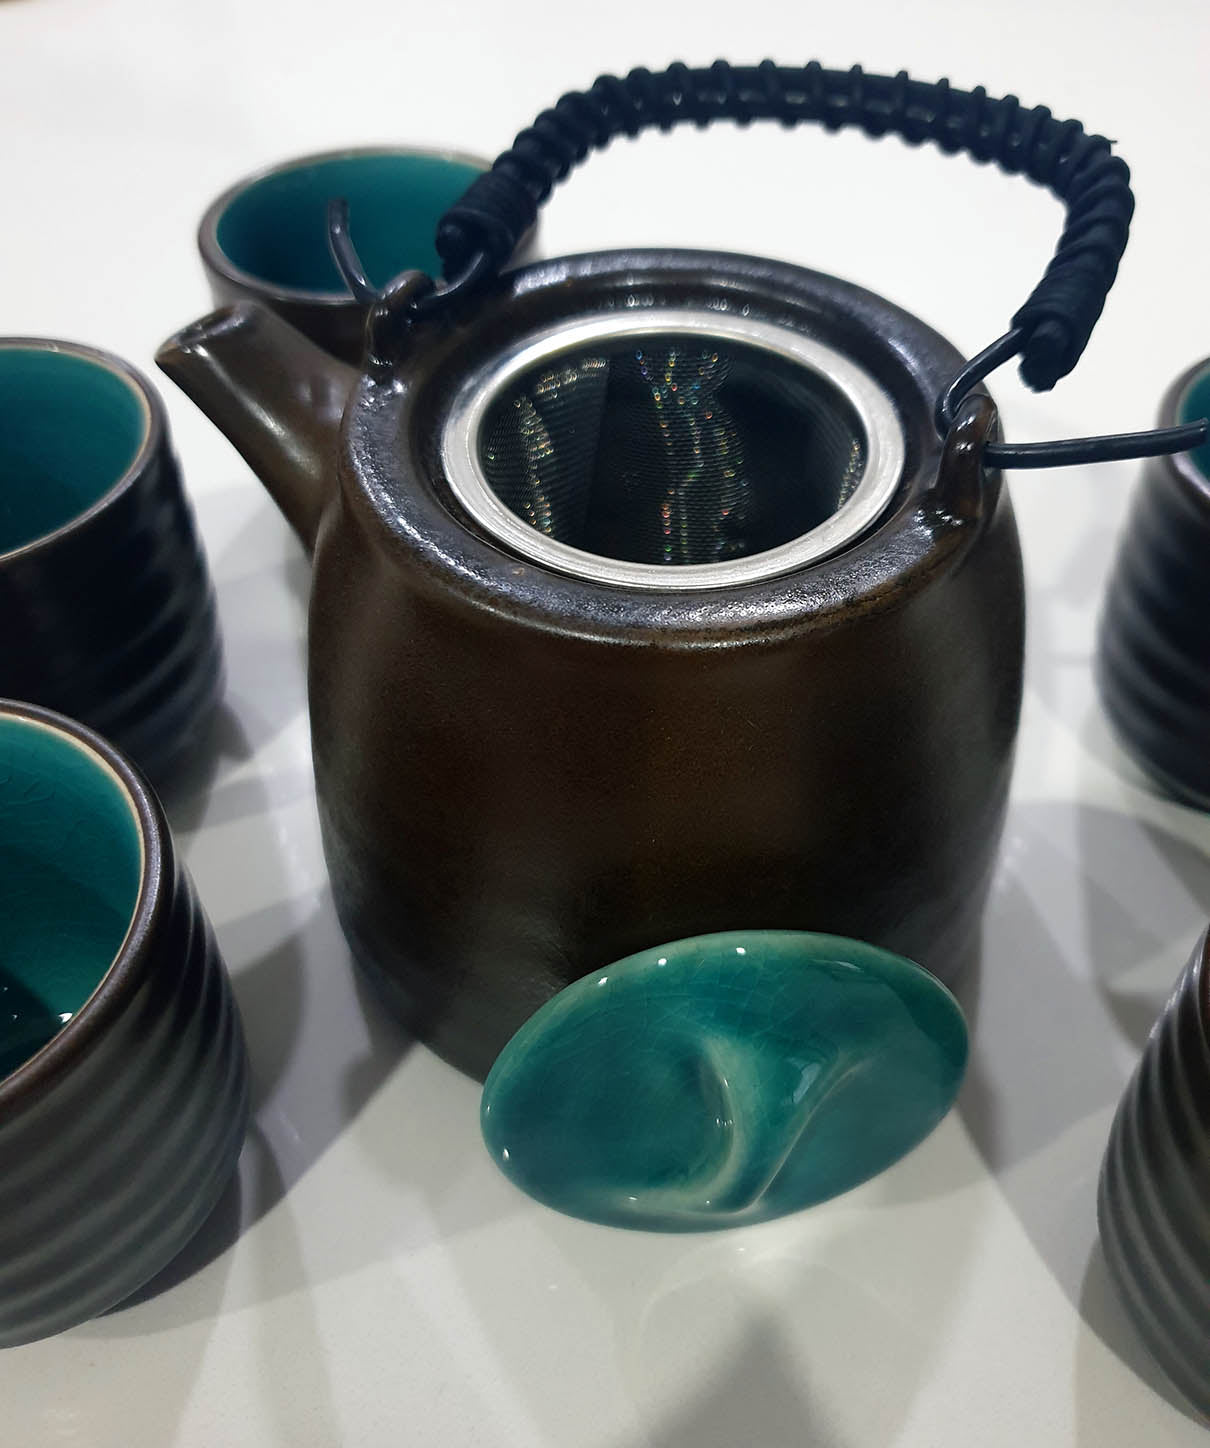 6-piece Japanese Tea Set - Jade Green - Deb's Hidden Treasures